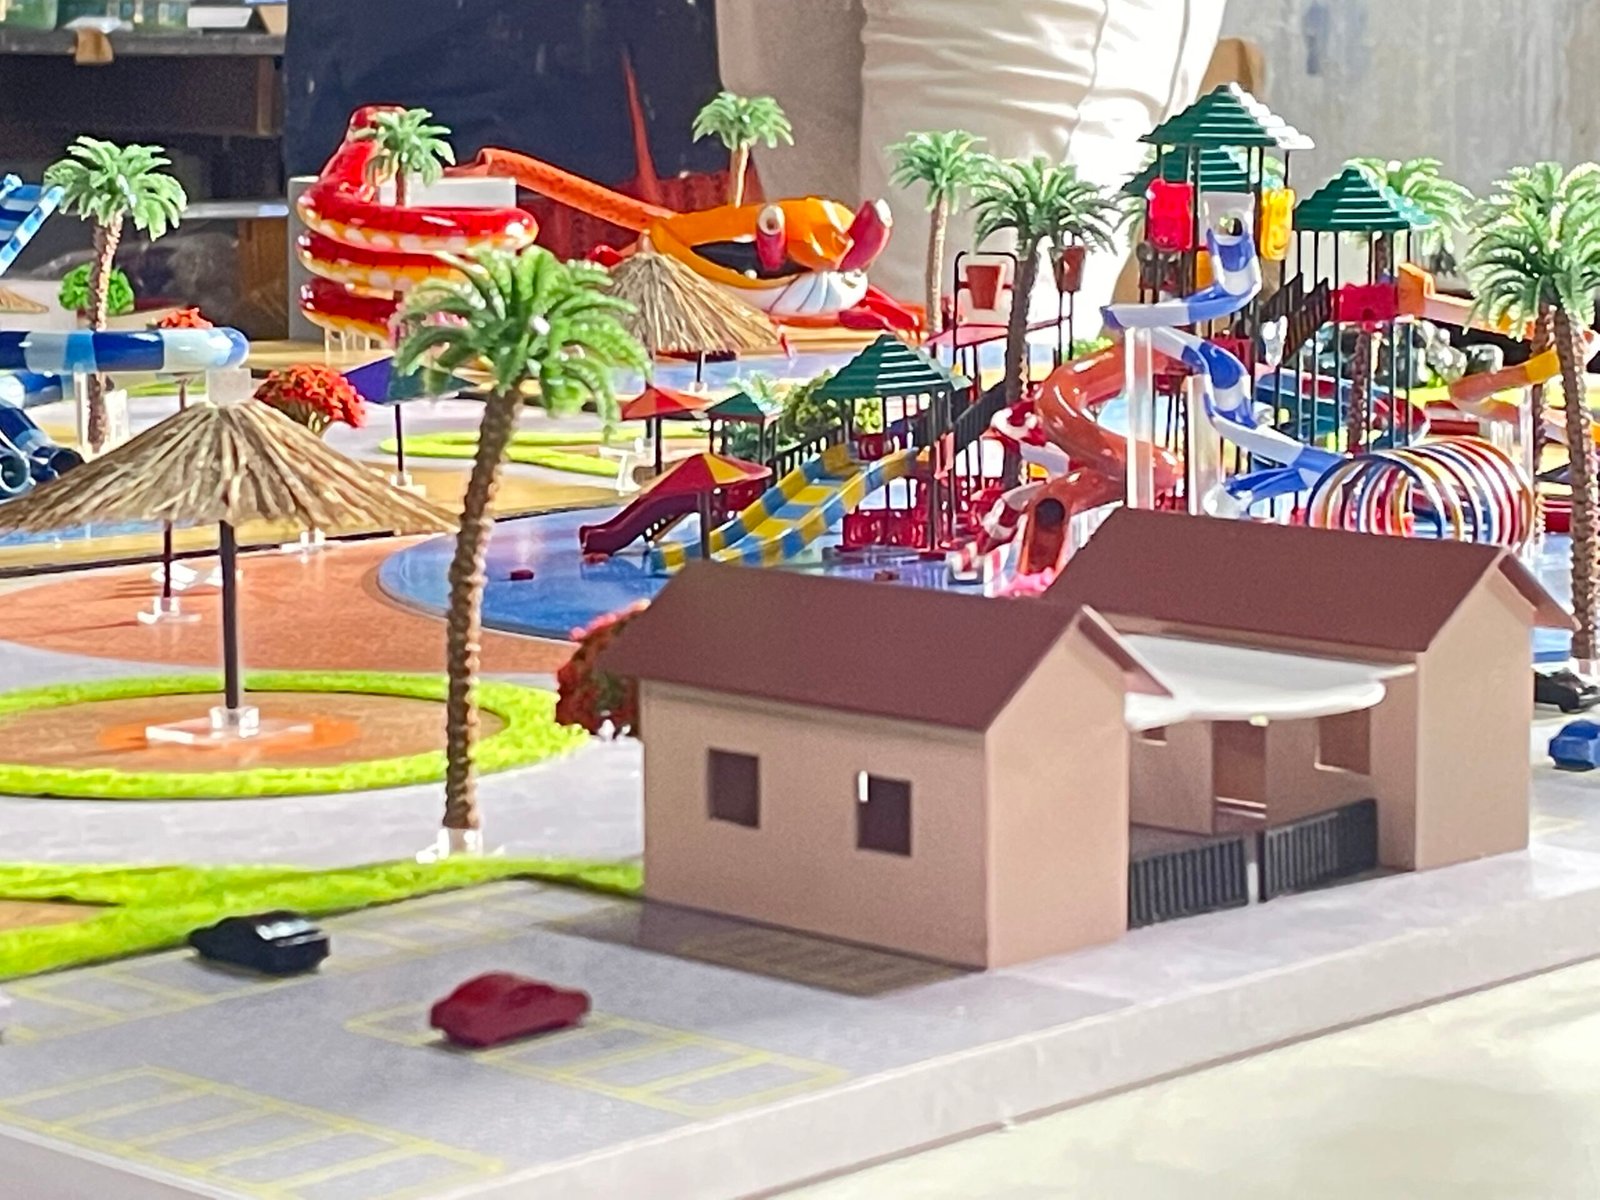 theme park scale model